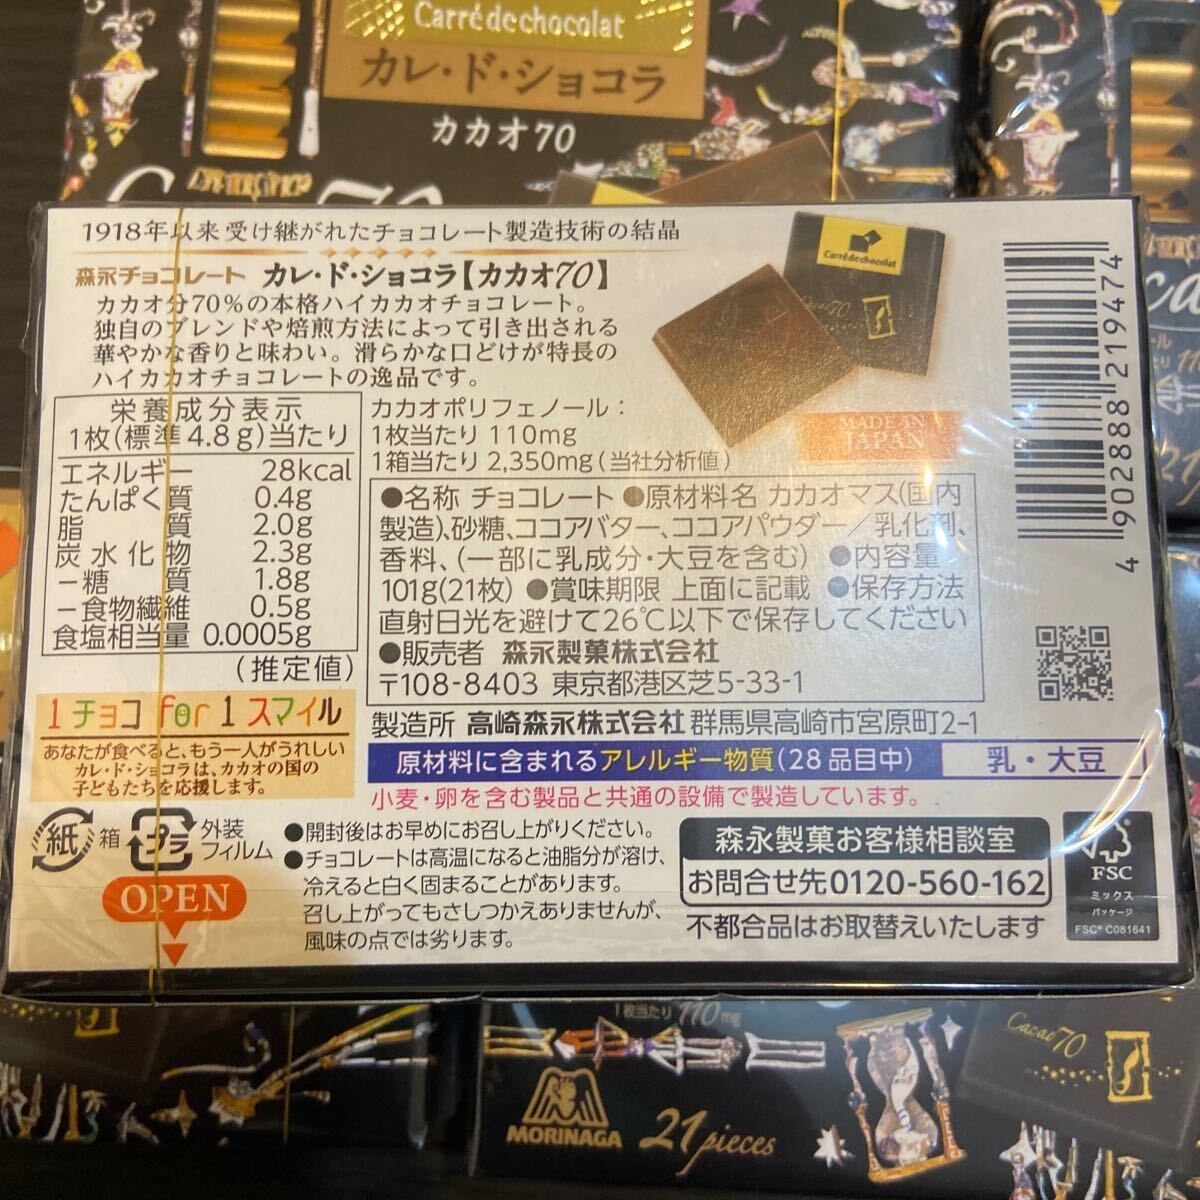 森永 カレドショコラ カカオ 70 101g 5箱セット カレドショコラ _画像3